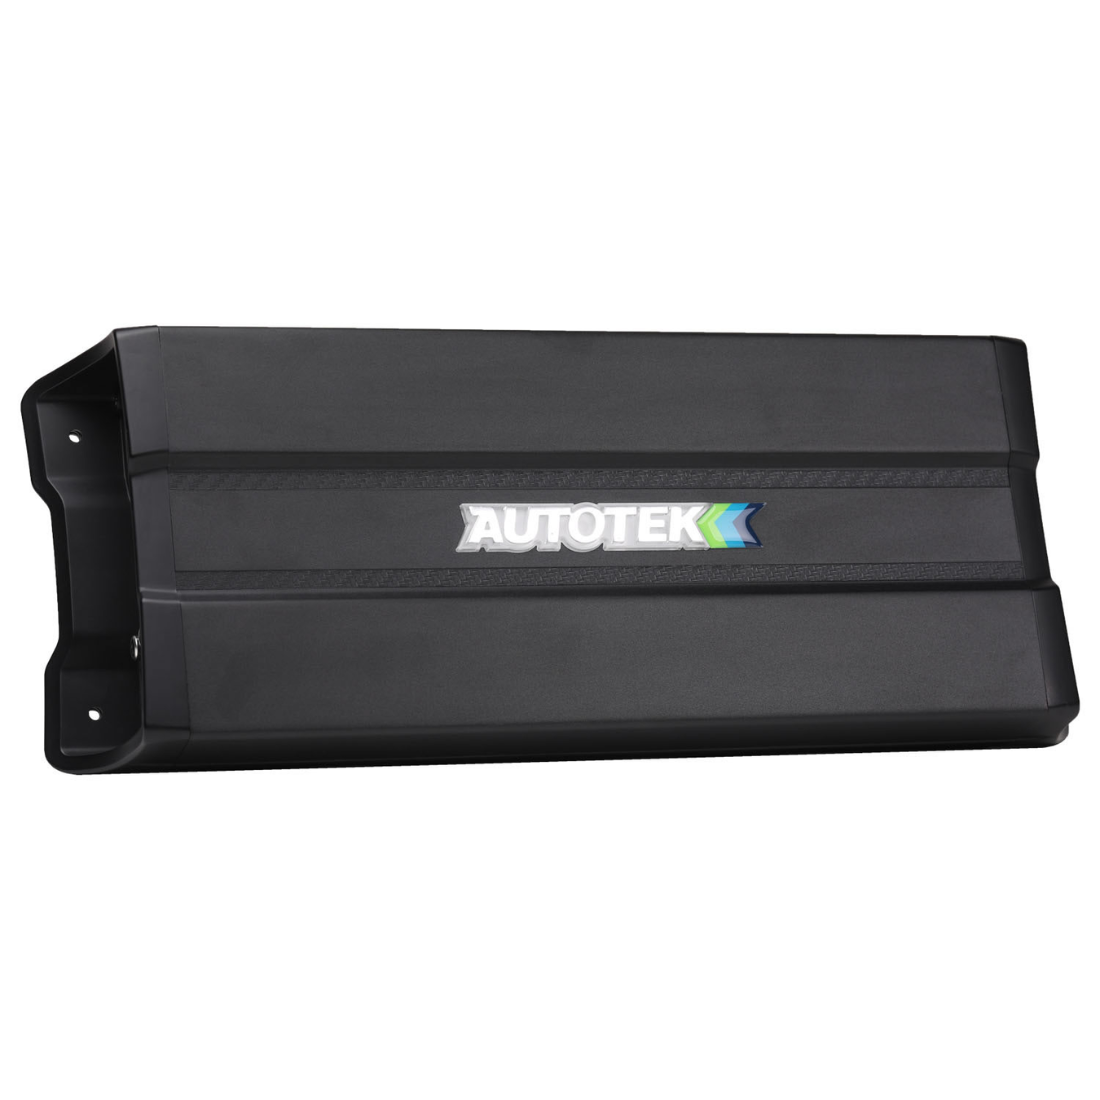 Autotek MM-4025.1D 4000W Max 1-CH Monoblock Class-D Car Audio Compact Amplifier